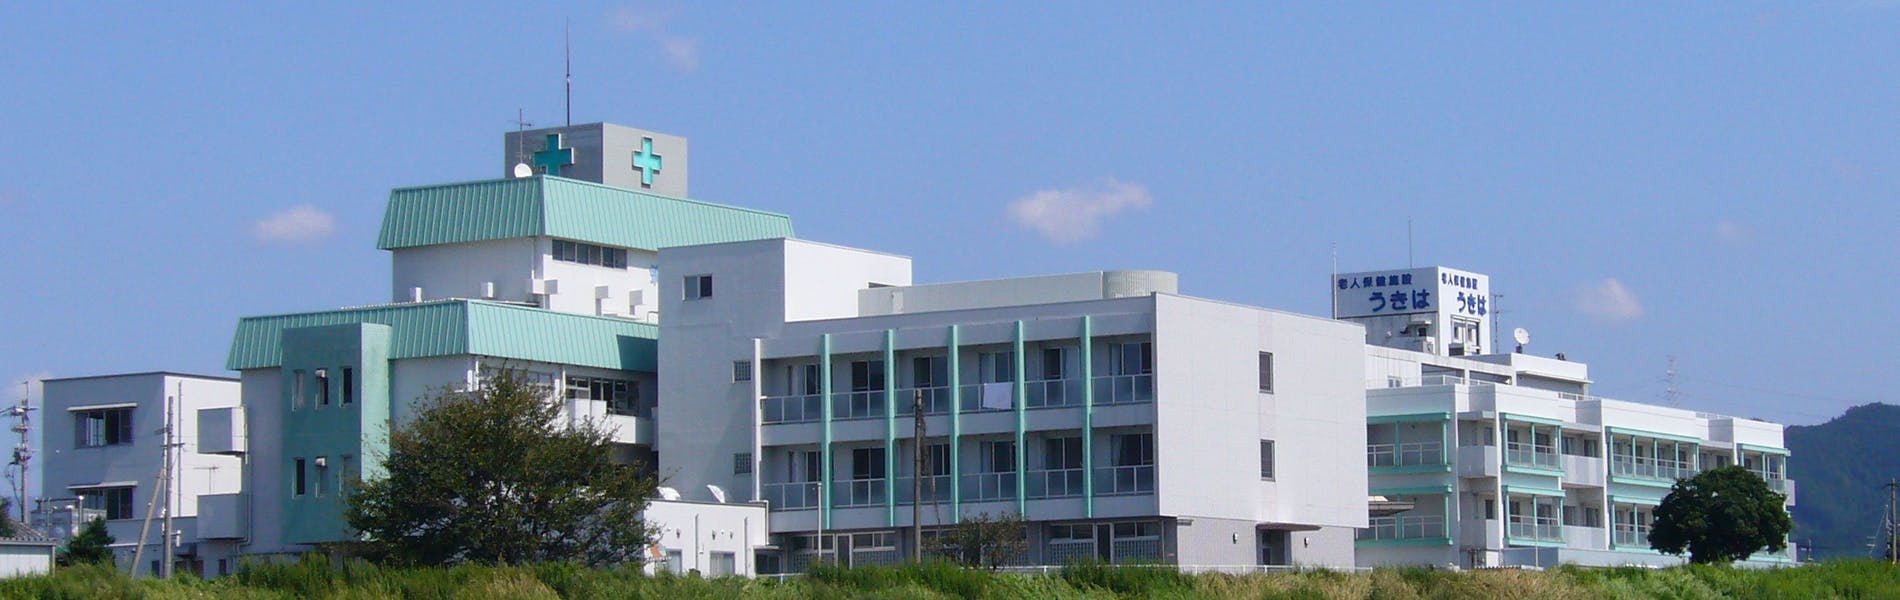 筑後川温泉病院訪問看護ステーションの写真